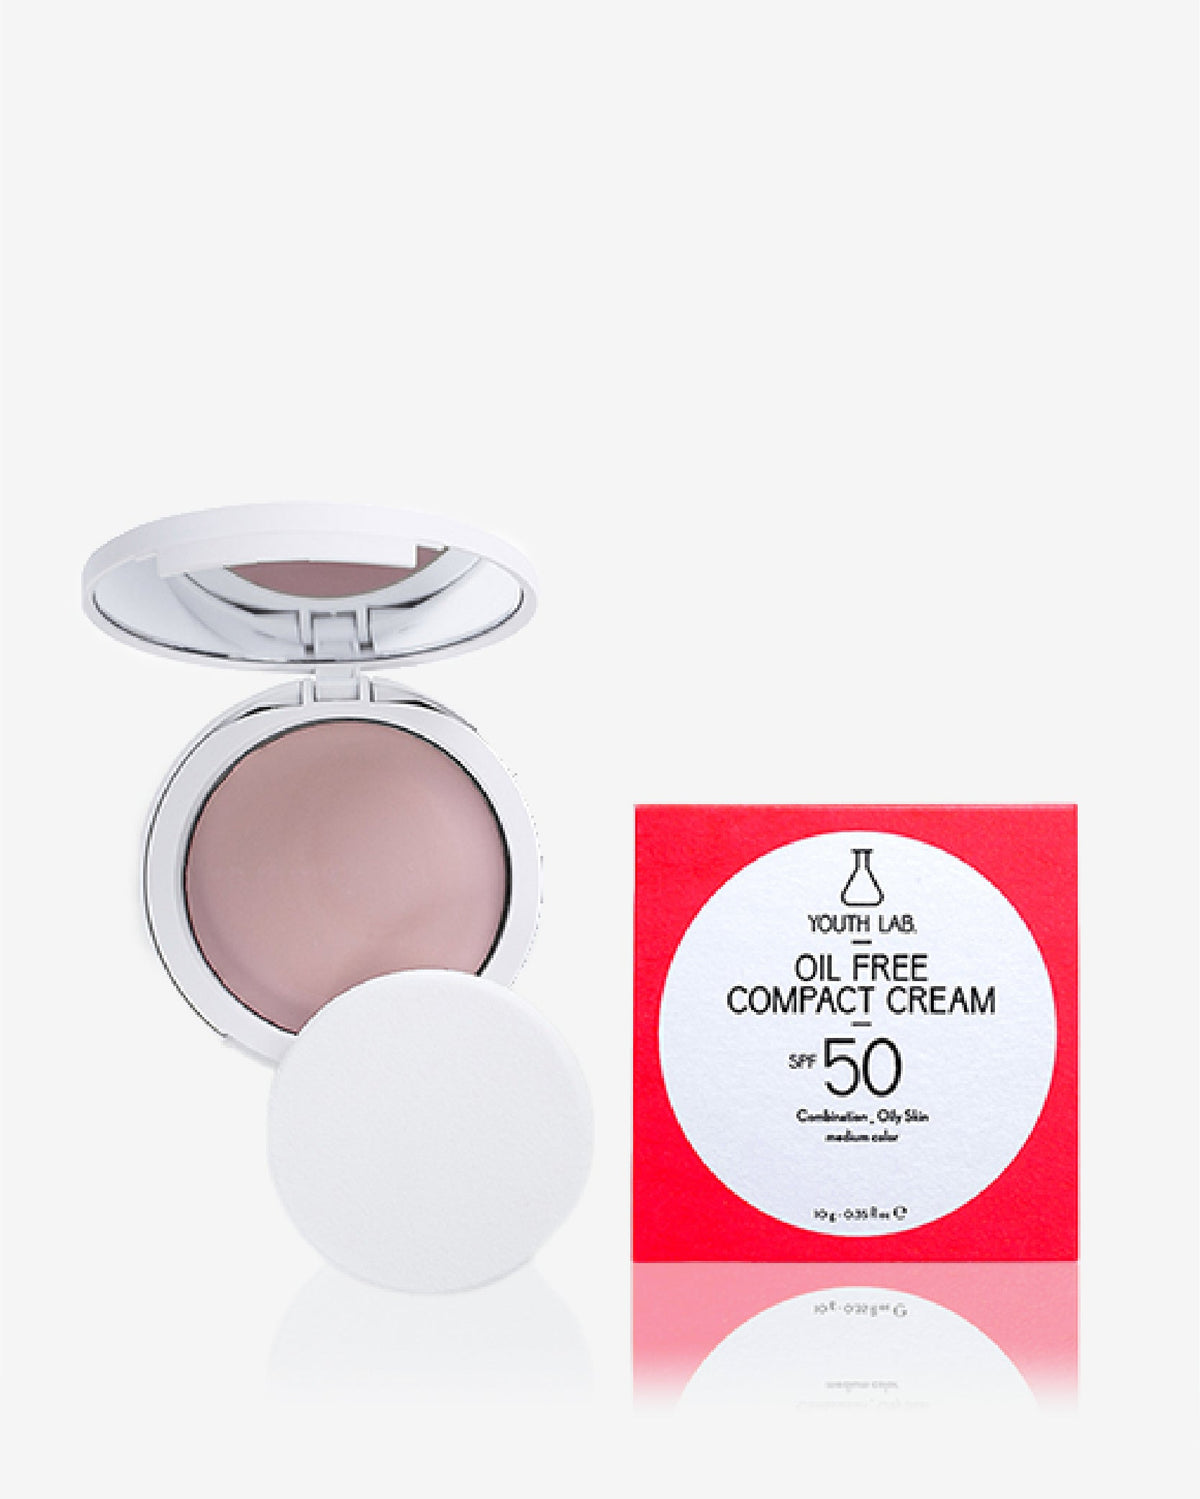 Oil Free Compact Cream Spf 50 Combination Oily Skin 10g